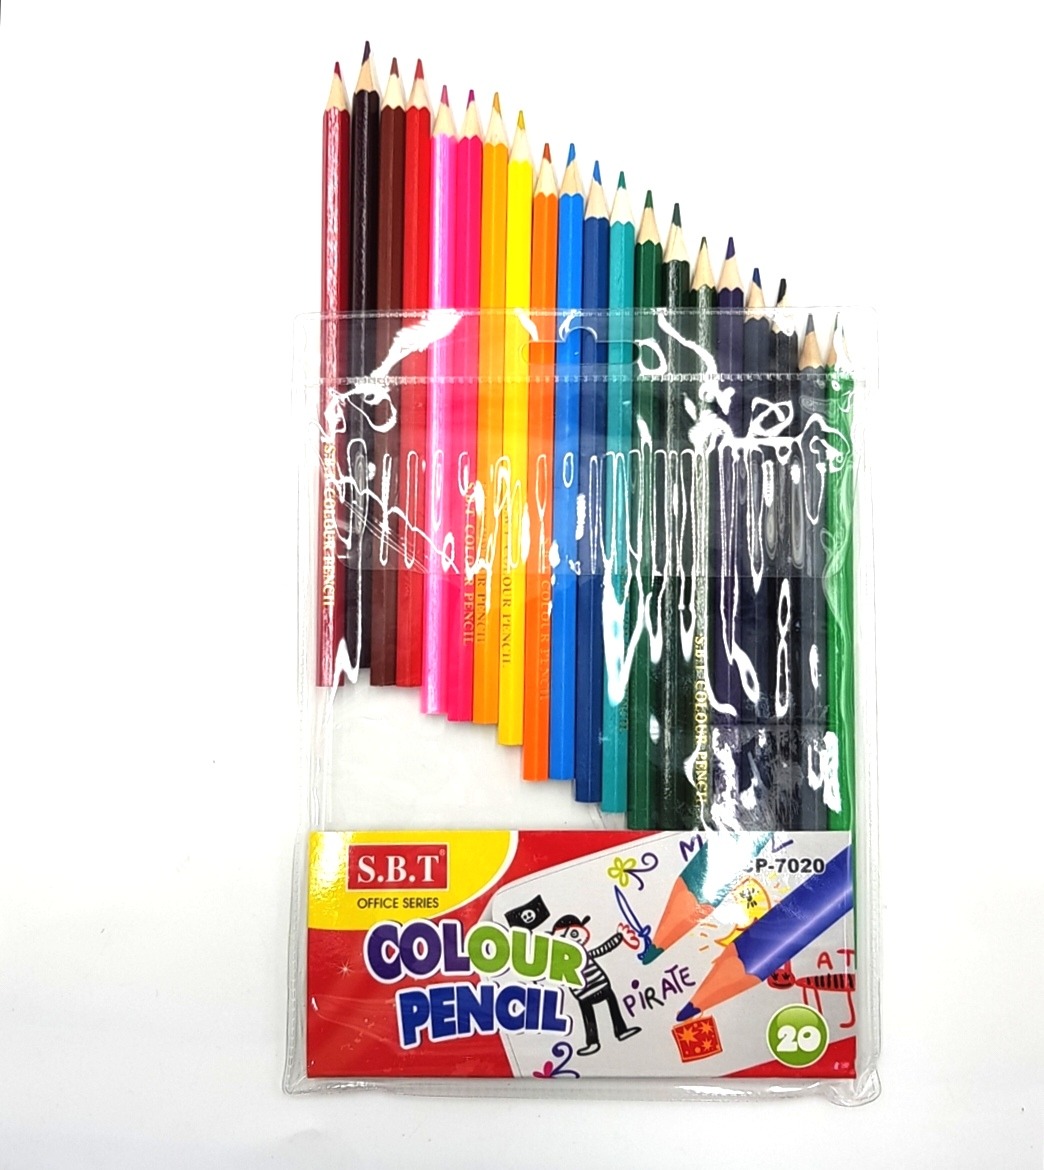 20 Colour Pencils